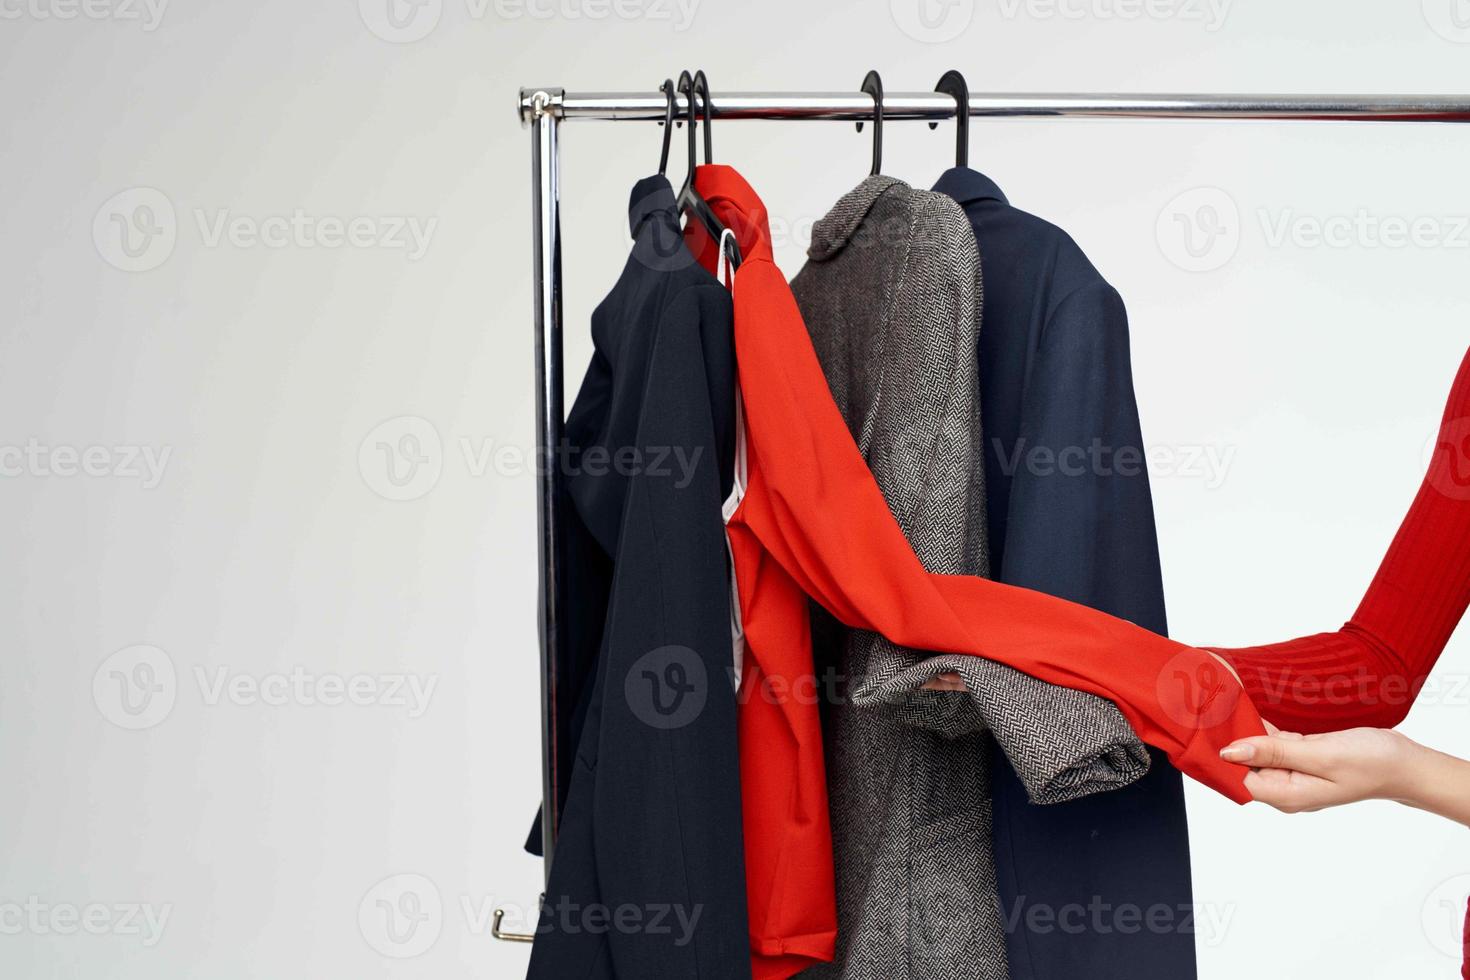 skön kvinna i en röd jacka nära de garderob detaljhandeln ljus bakgrund foto